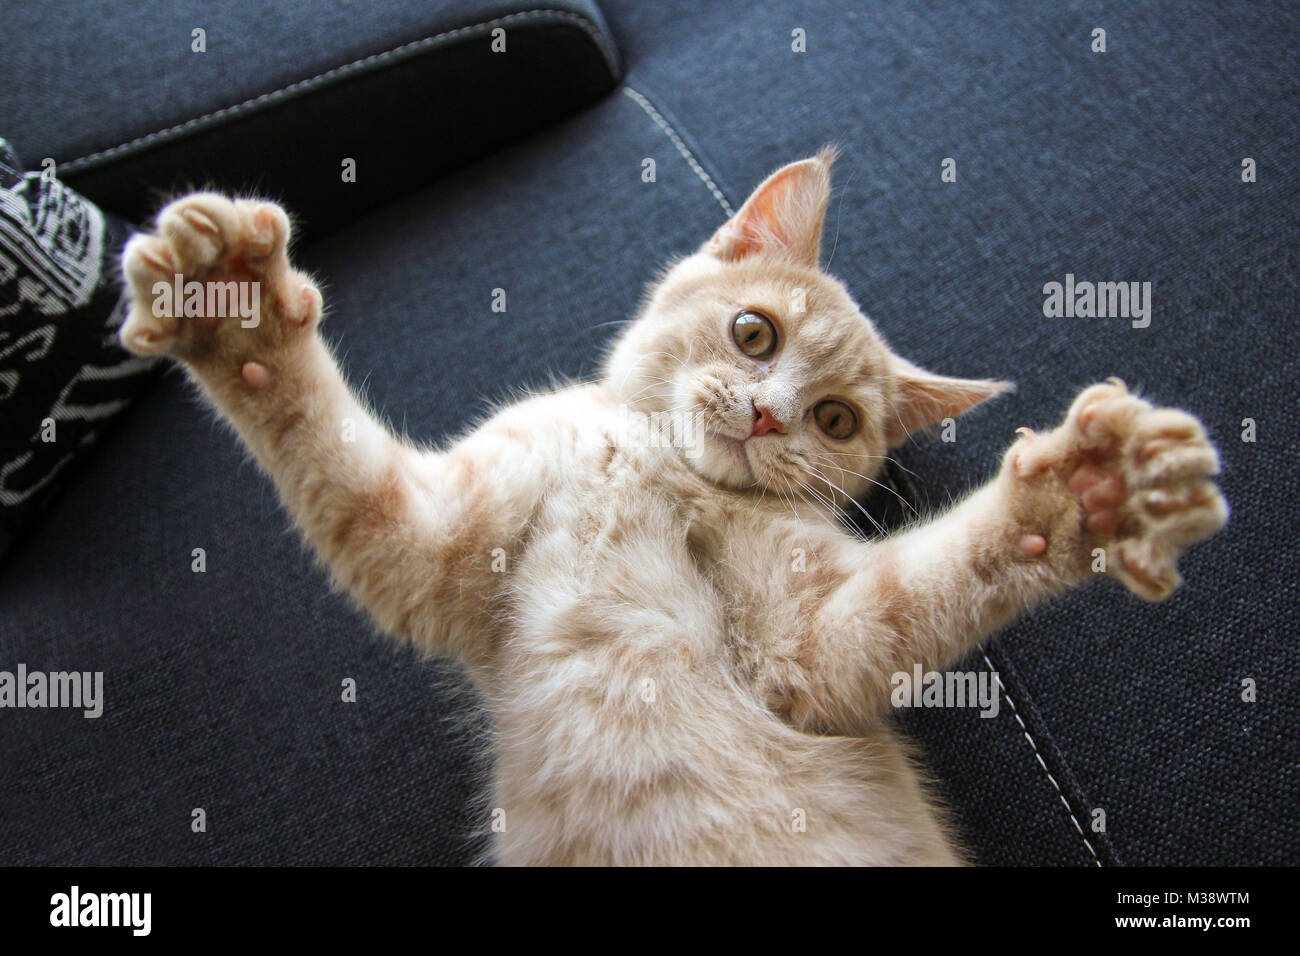 A cute kitty joue avec ses pattes. Banque D'Images